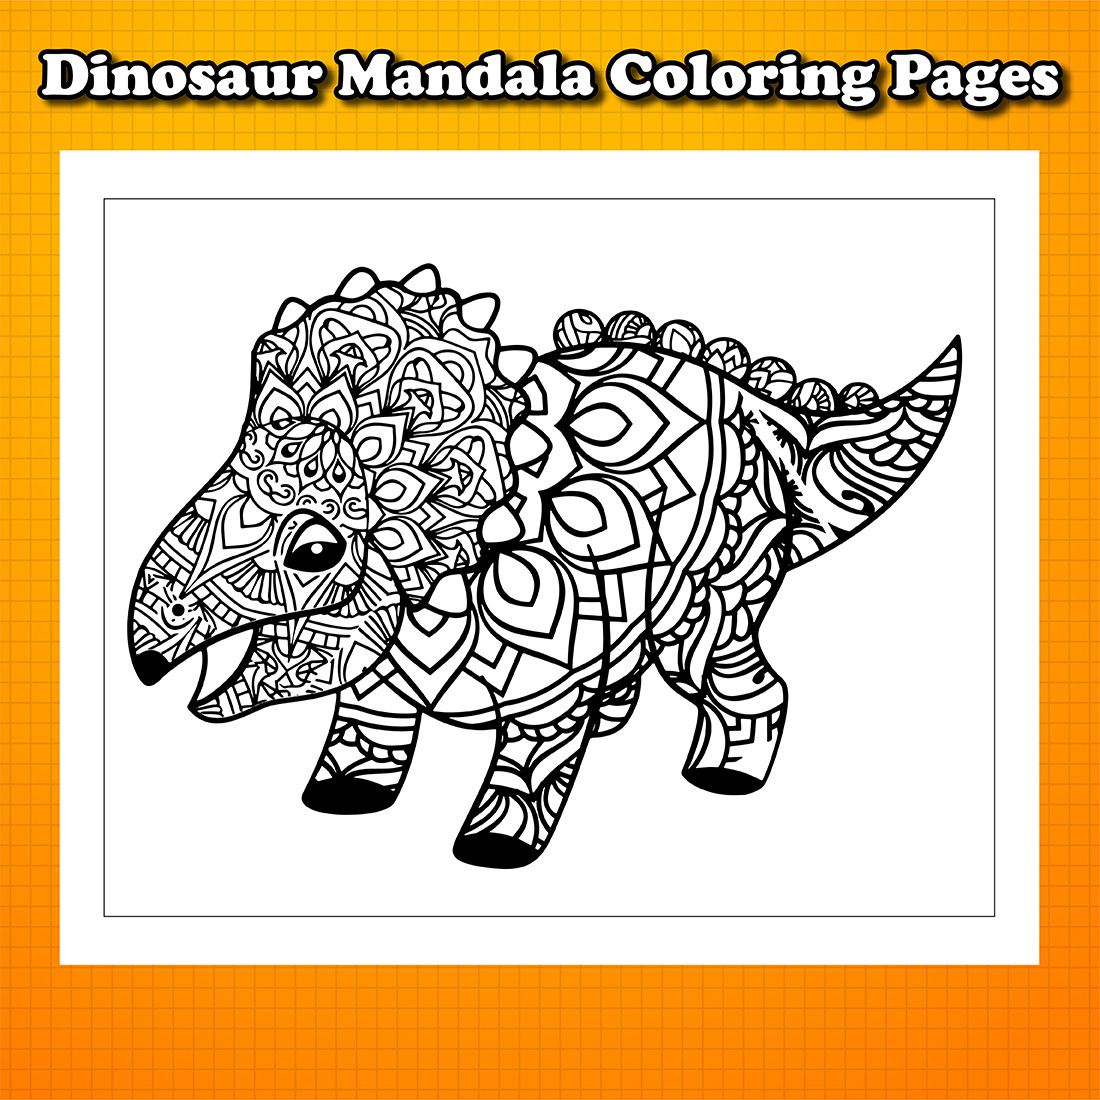 Dinosaur Mandala Coloring Pages